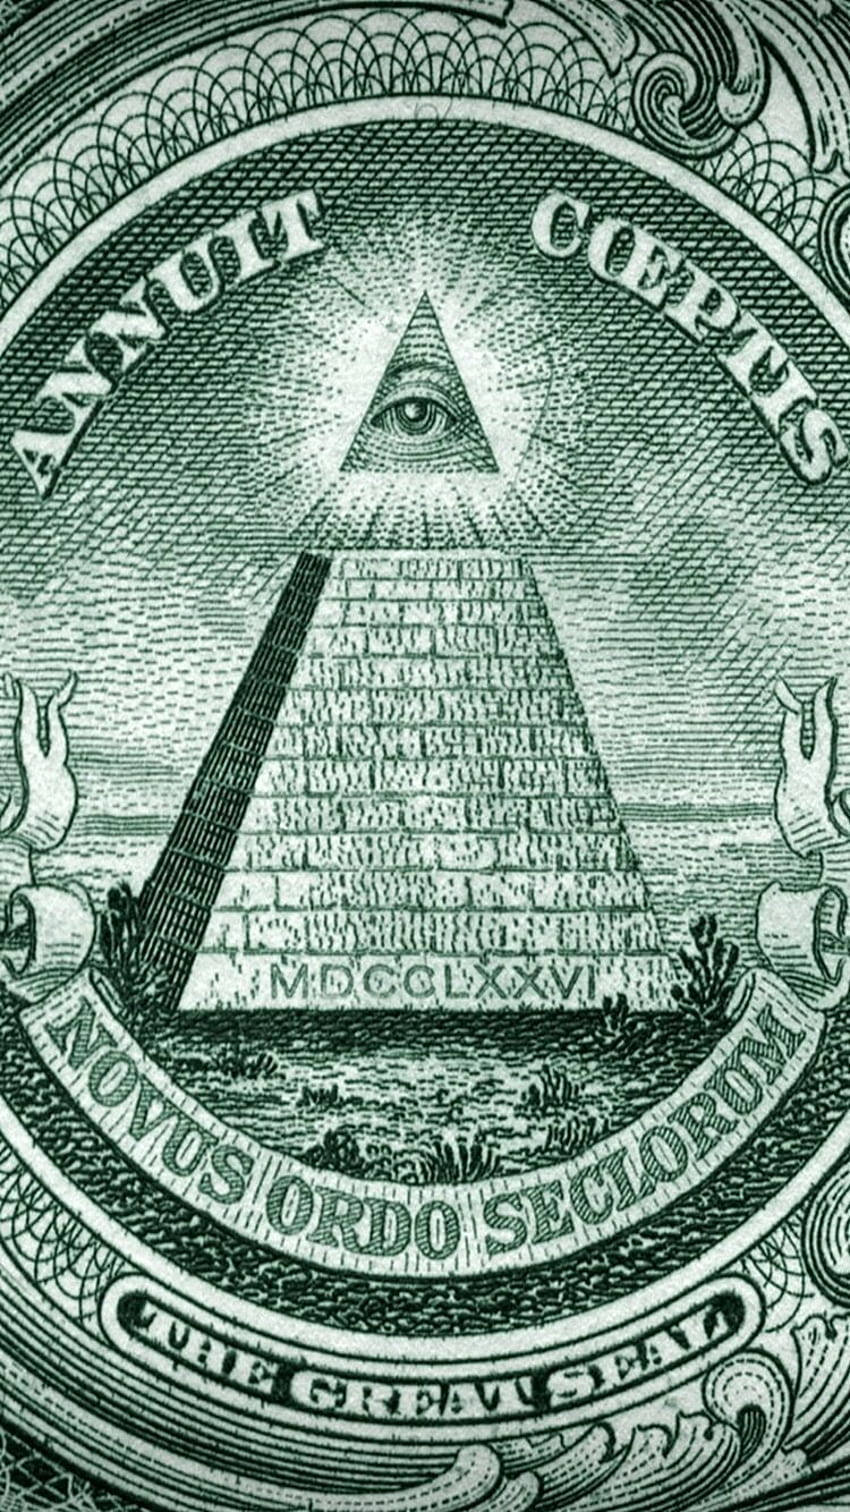 Margaret McGowan on Money. Illuminati HD phone wallpaper